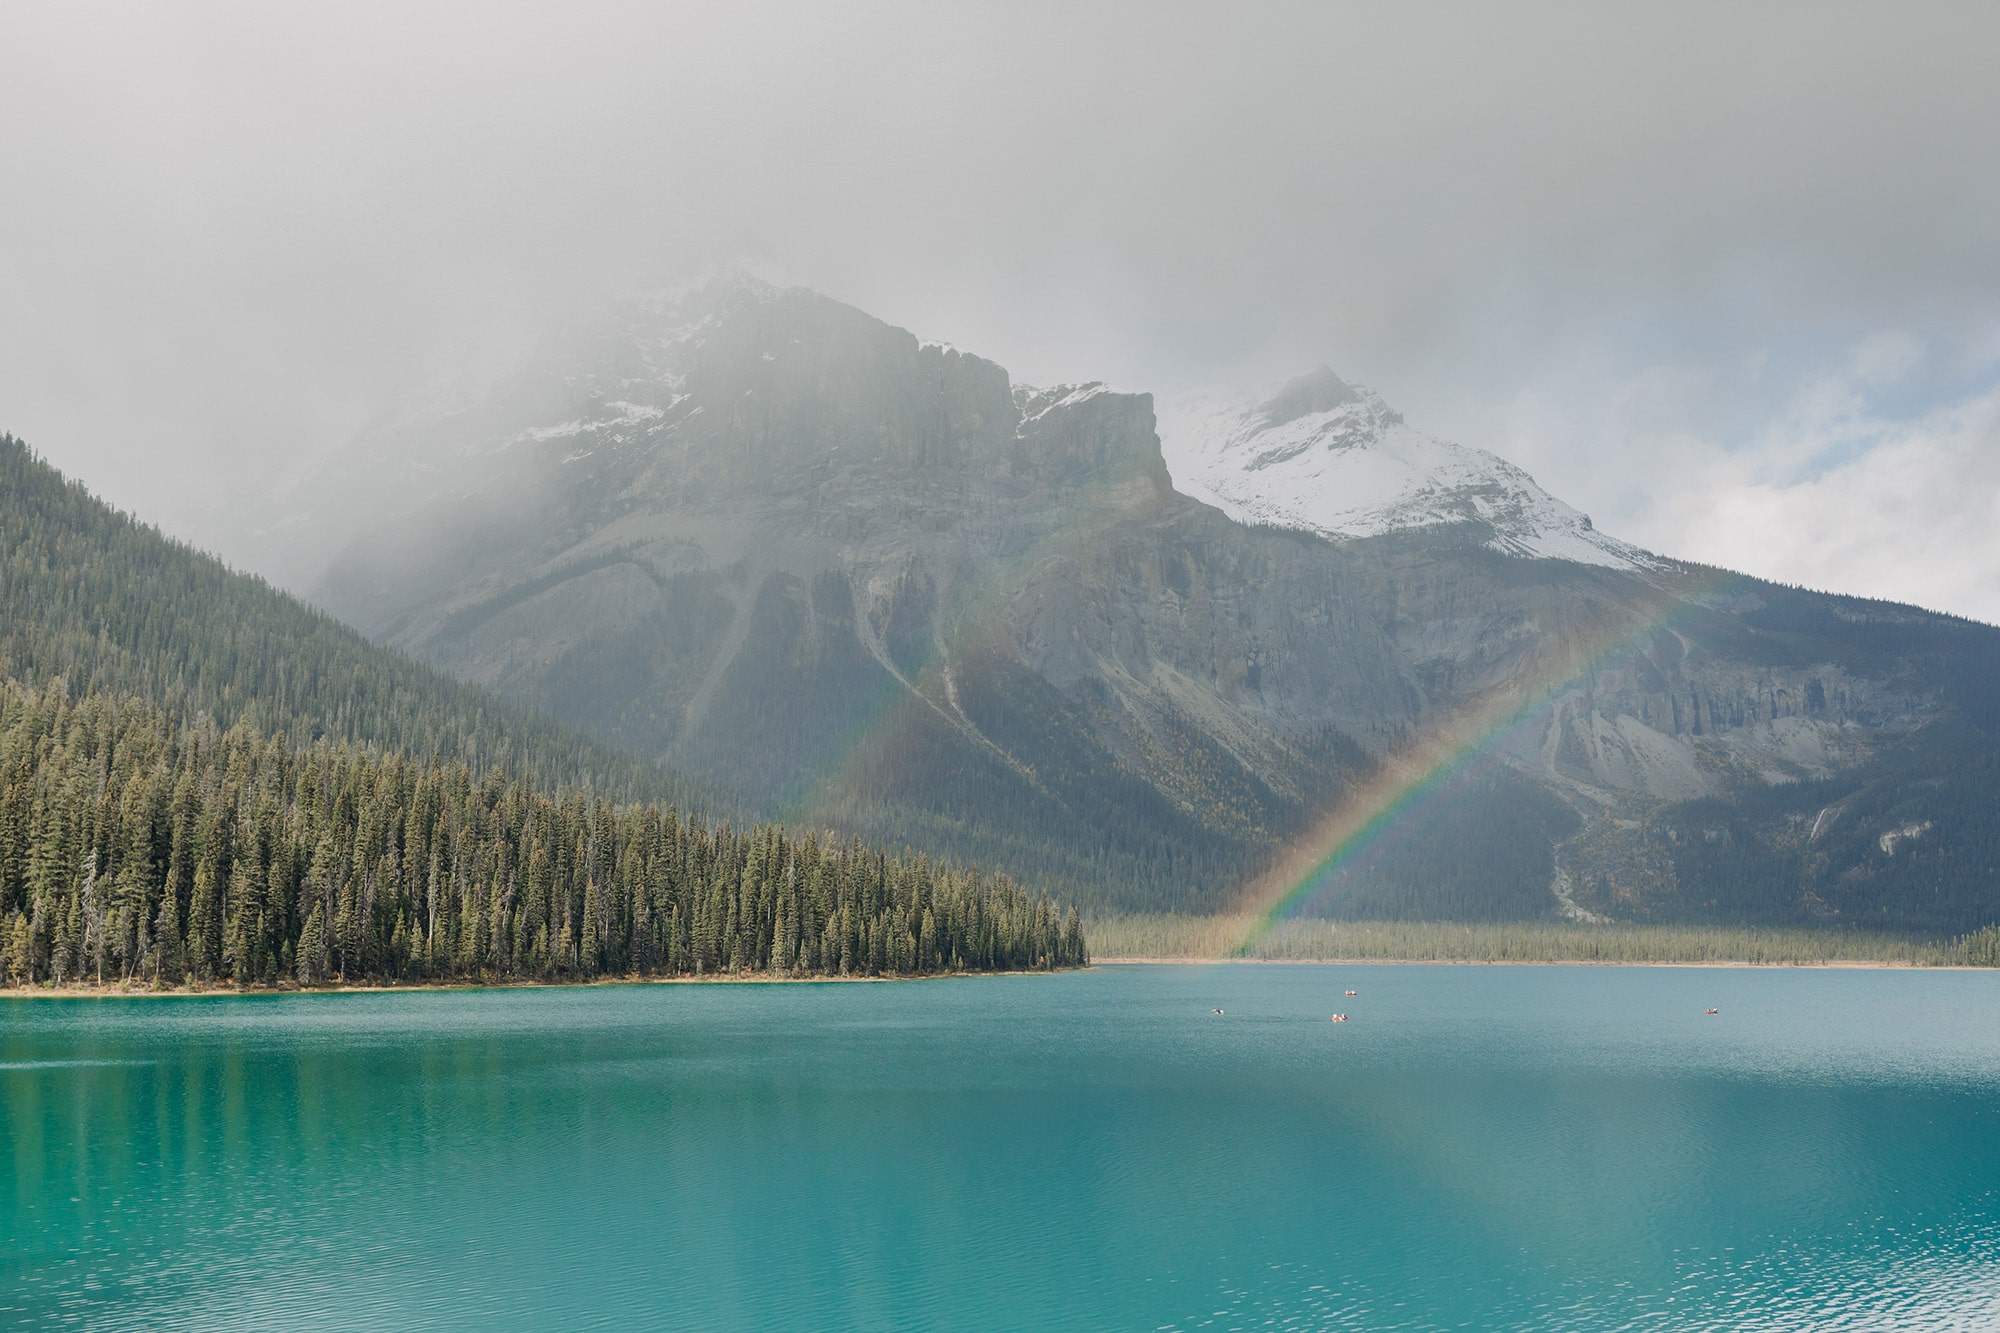 Double rainbow over Emerald Lake